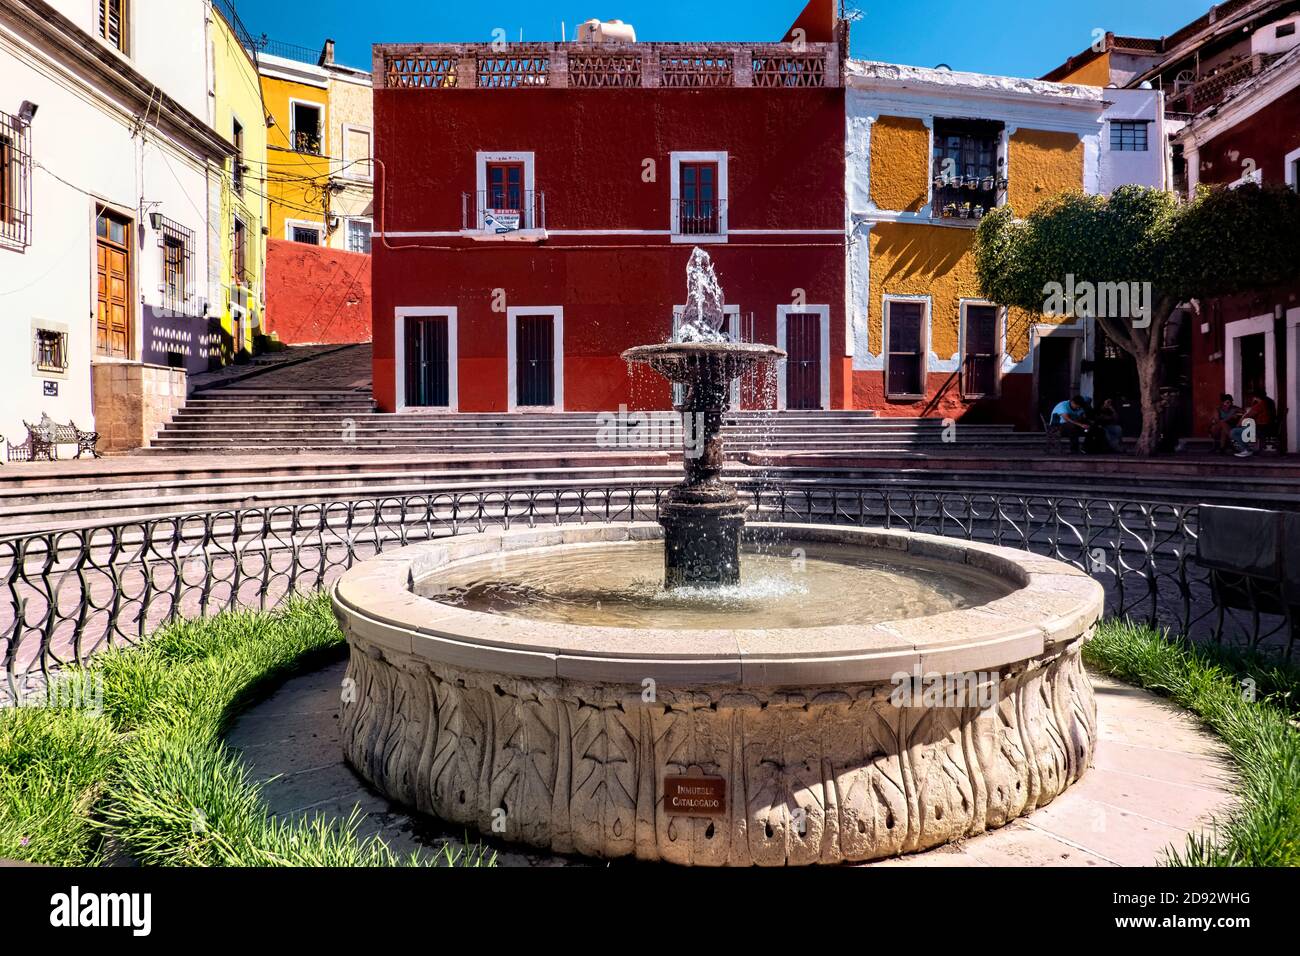 Picturesque Plaza de Los Angeles and fountain, Guanajuato, Mexico Stock Photo